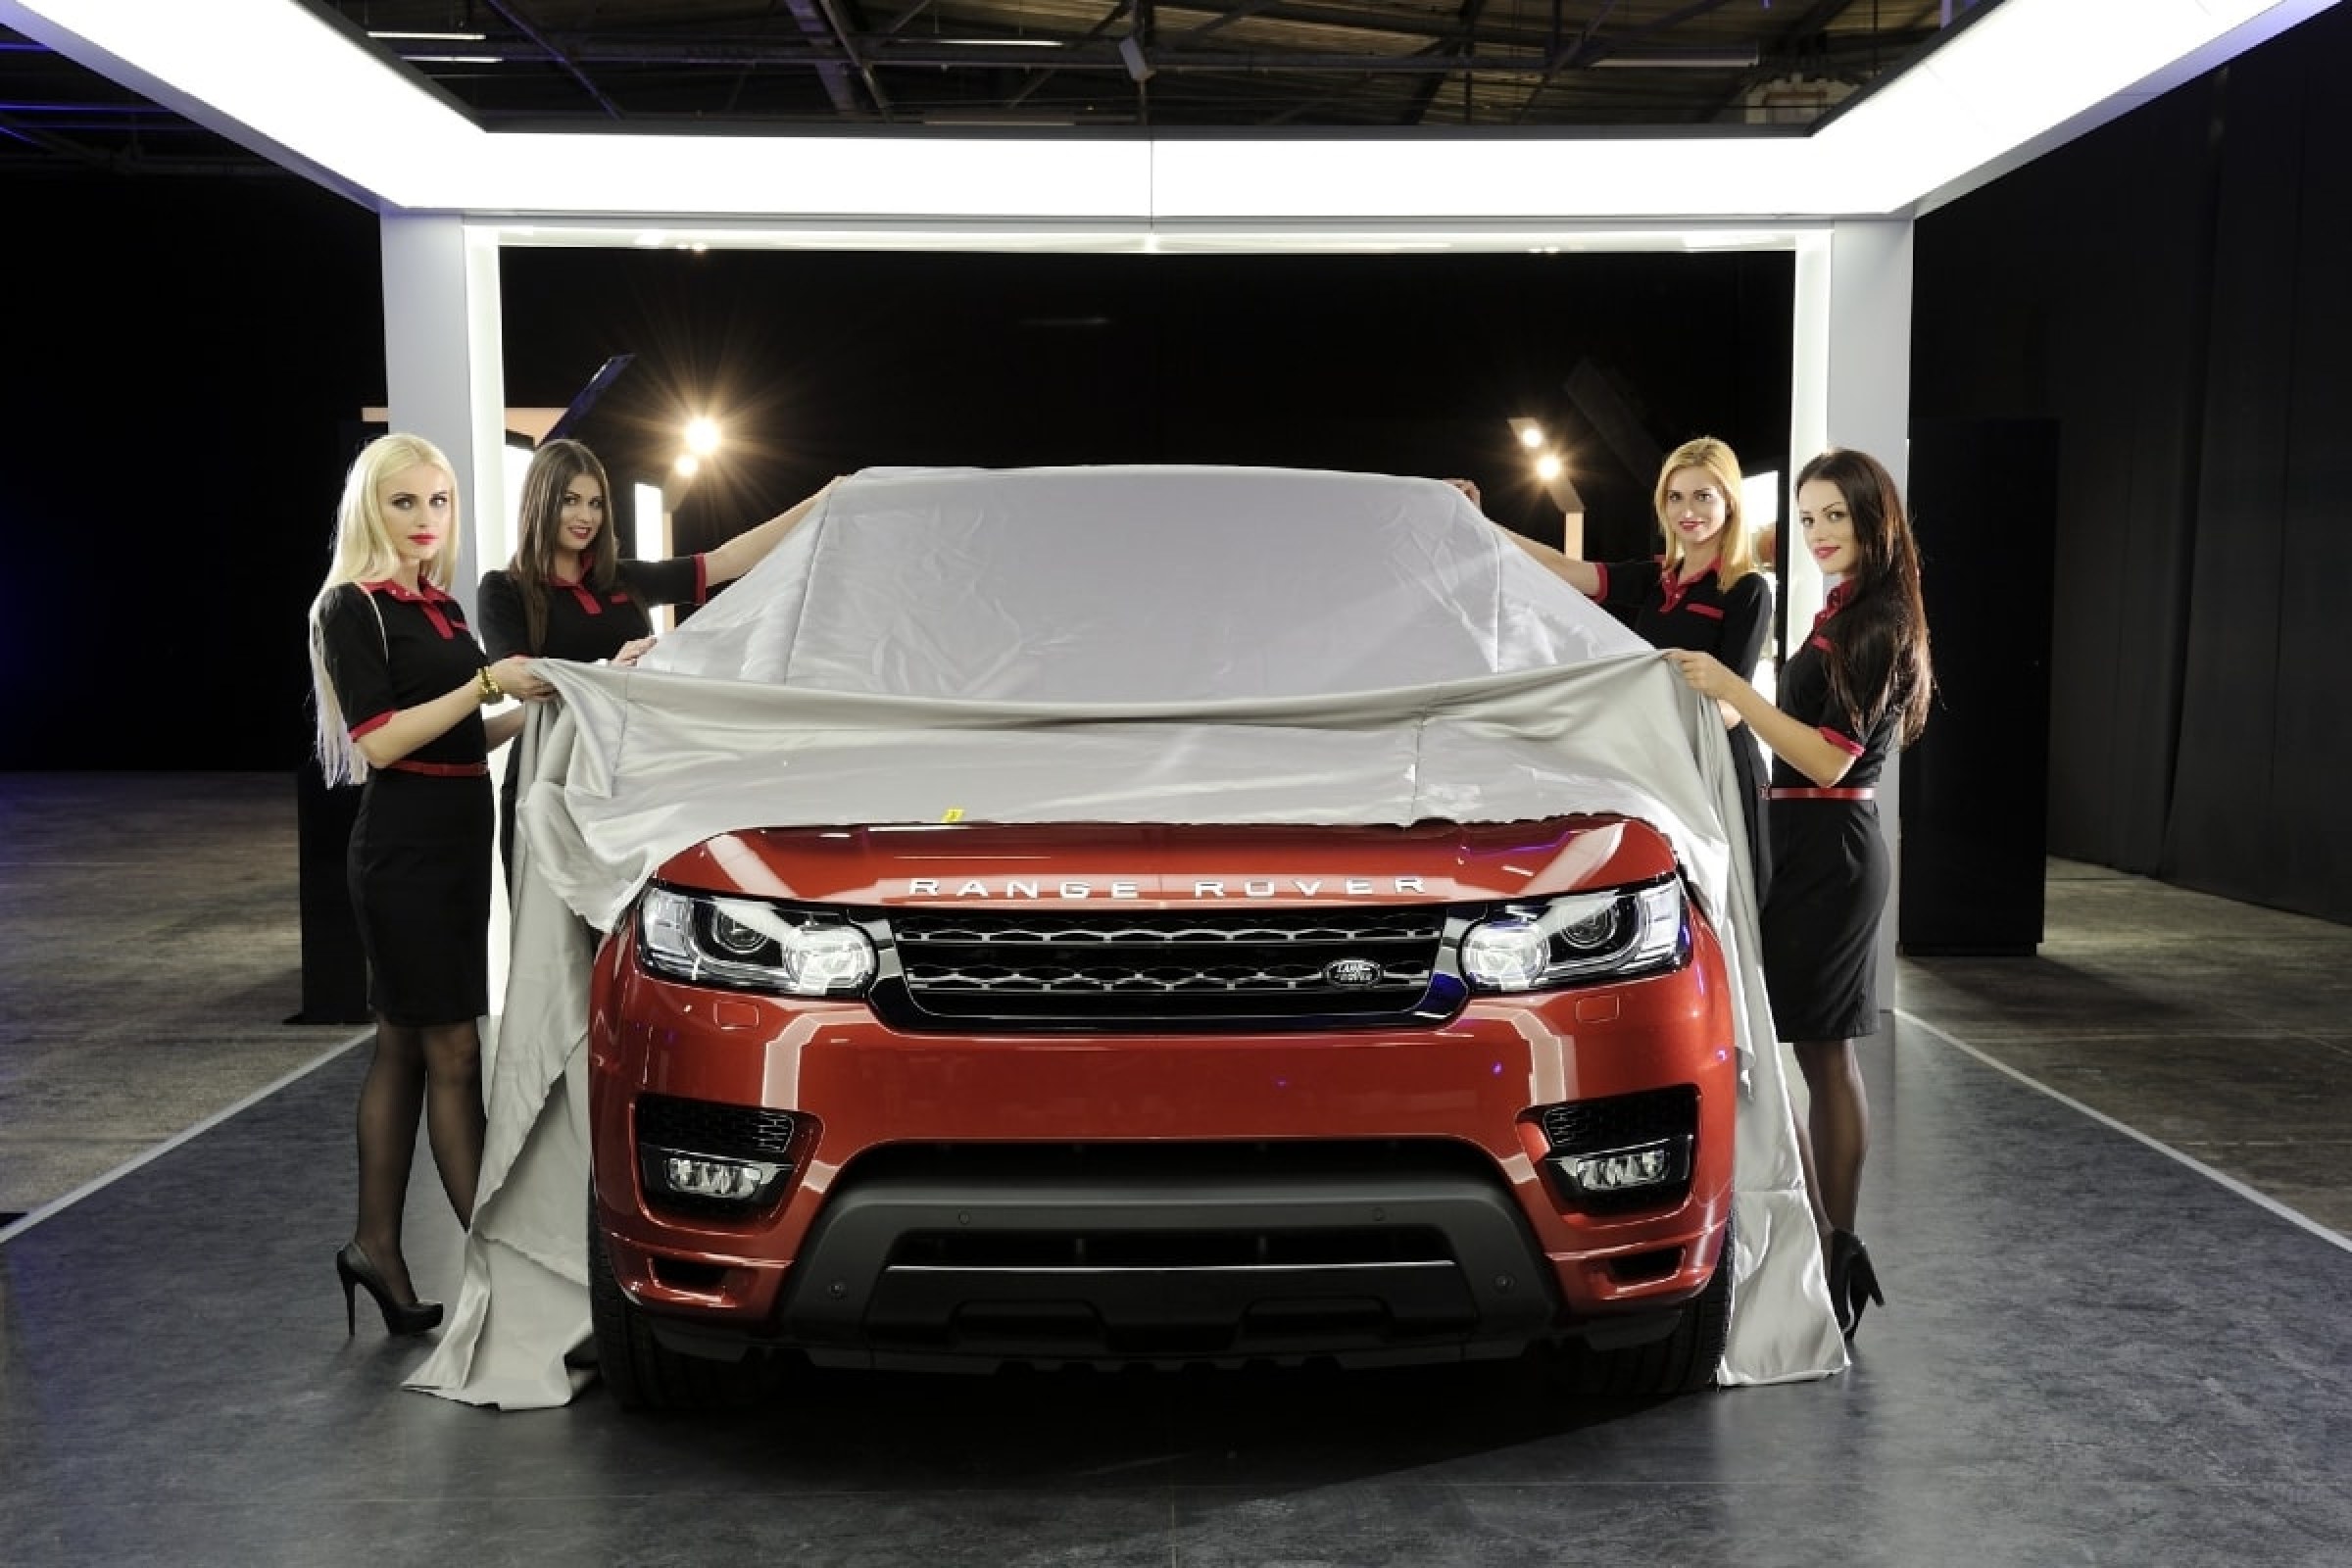 Range Rover Sport - Premiera w Warszawie